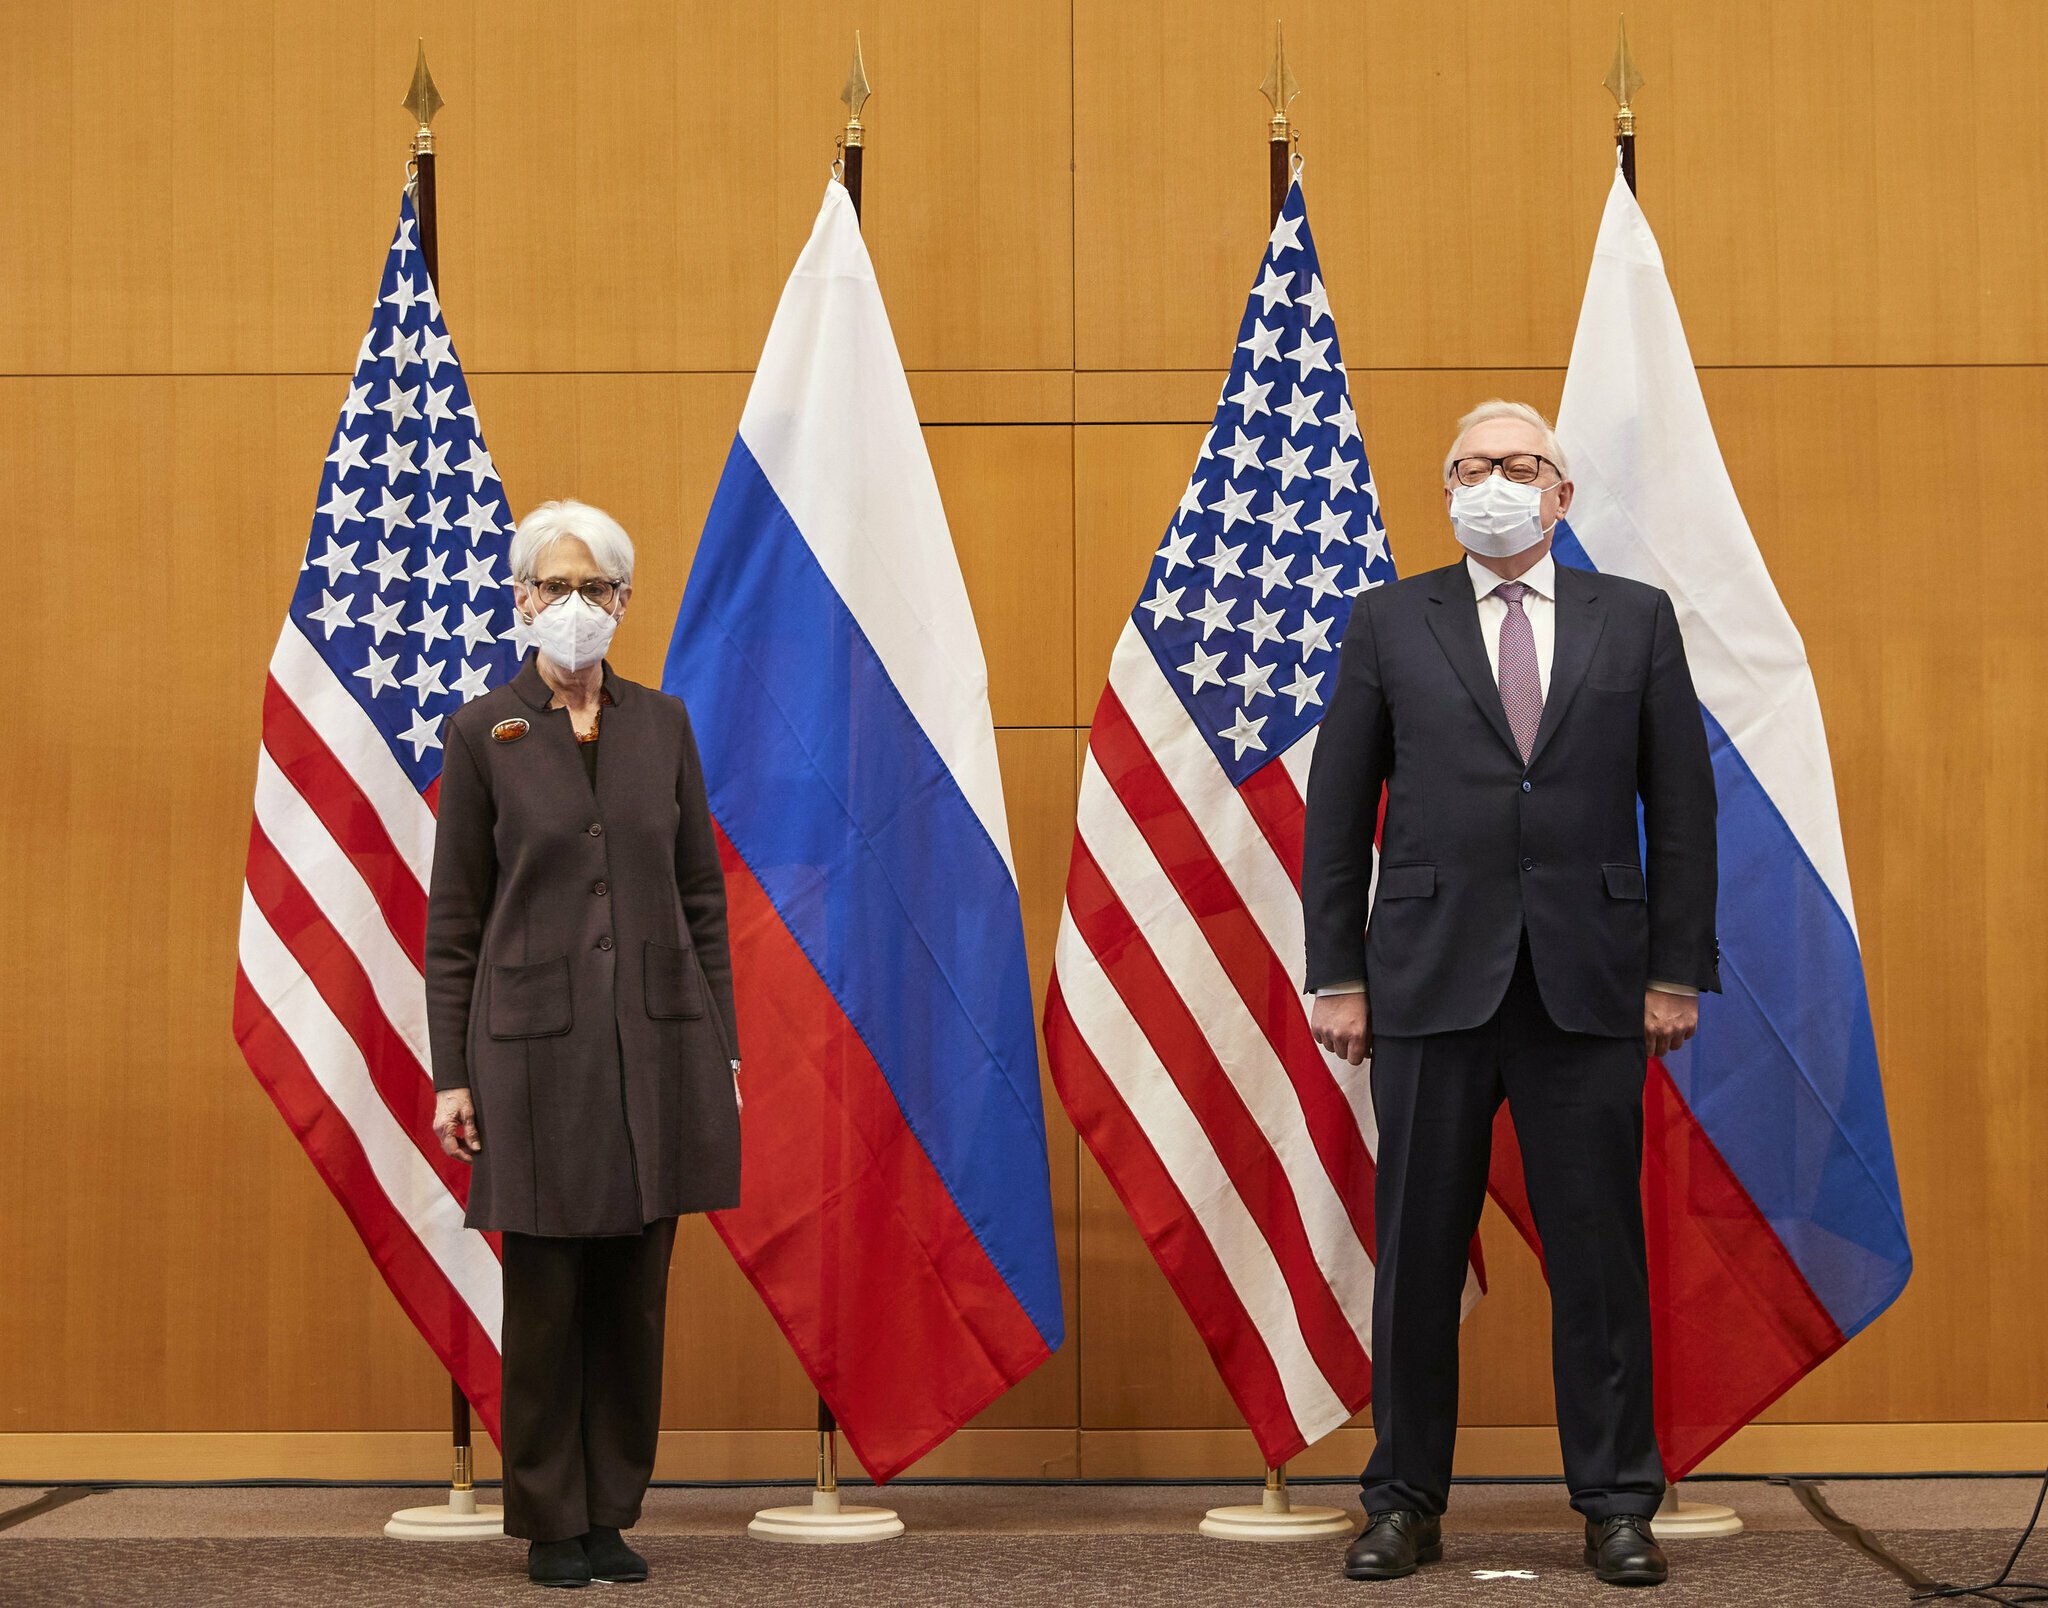 Rusya’dan ‘işgal’ yanıtı: Diplomatik bir çözümden yanayız